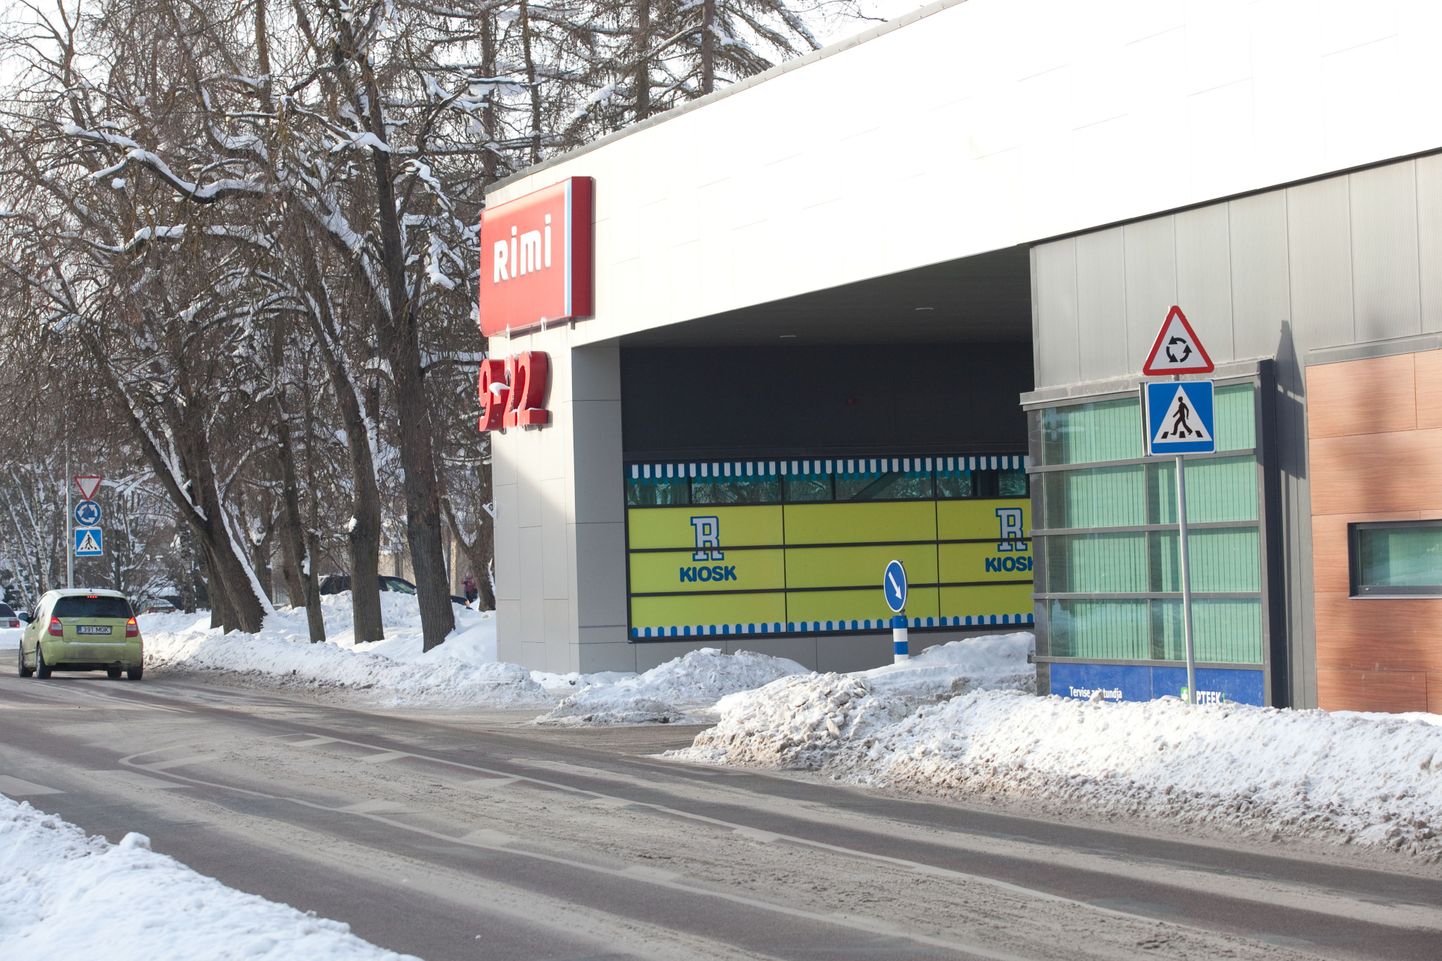 Rakveres Tallinna tänaval asuv Rimi supermarket.